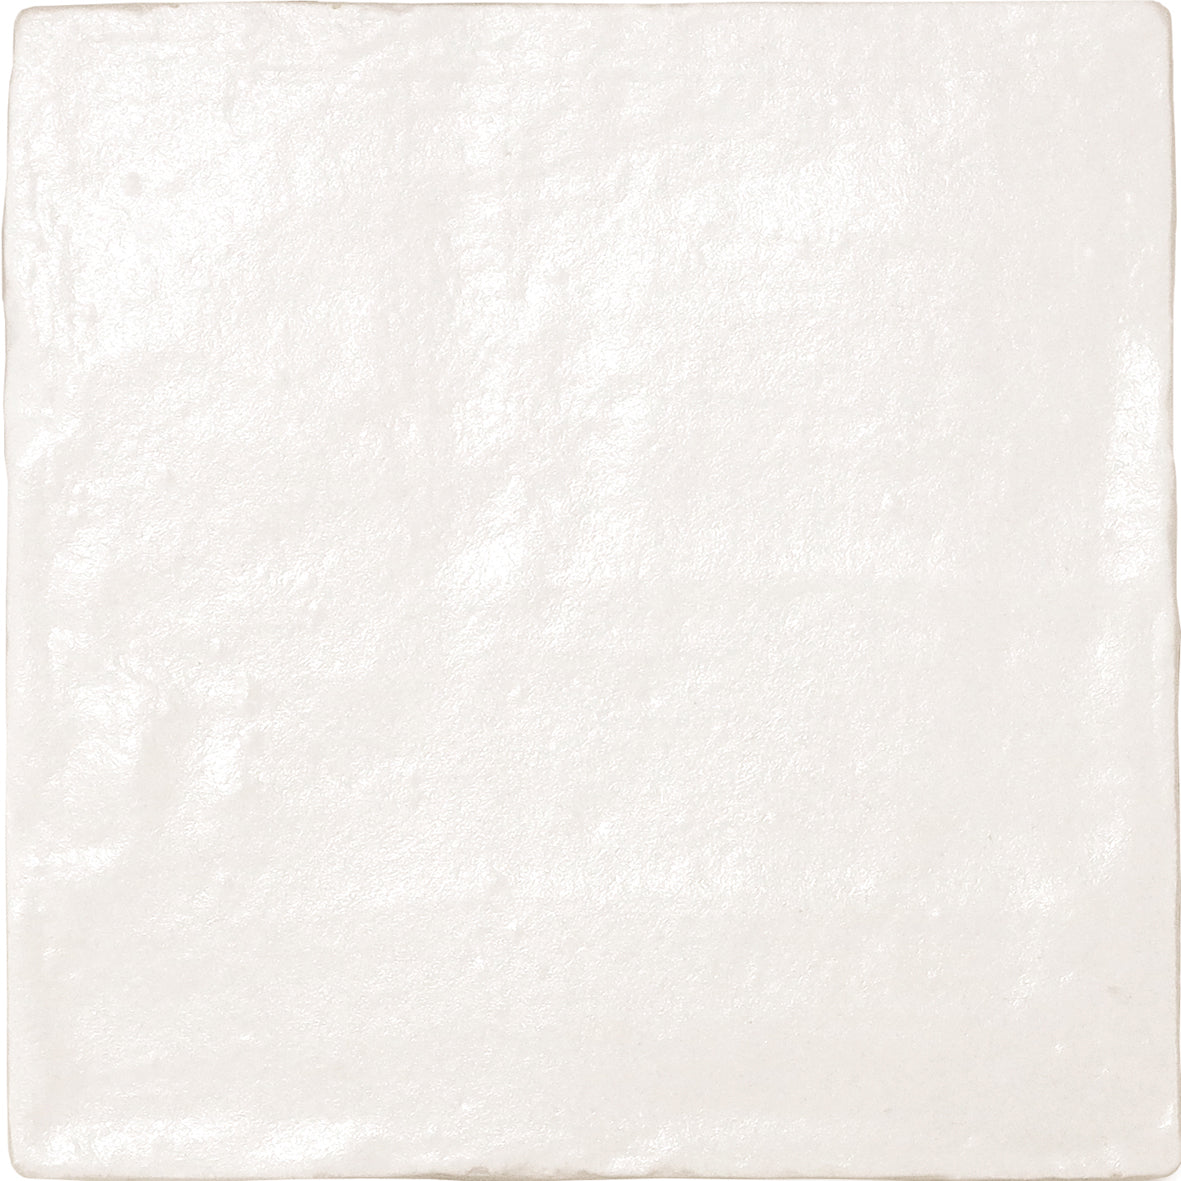 White Ceramic Tile for walls & floors